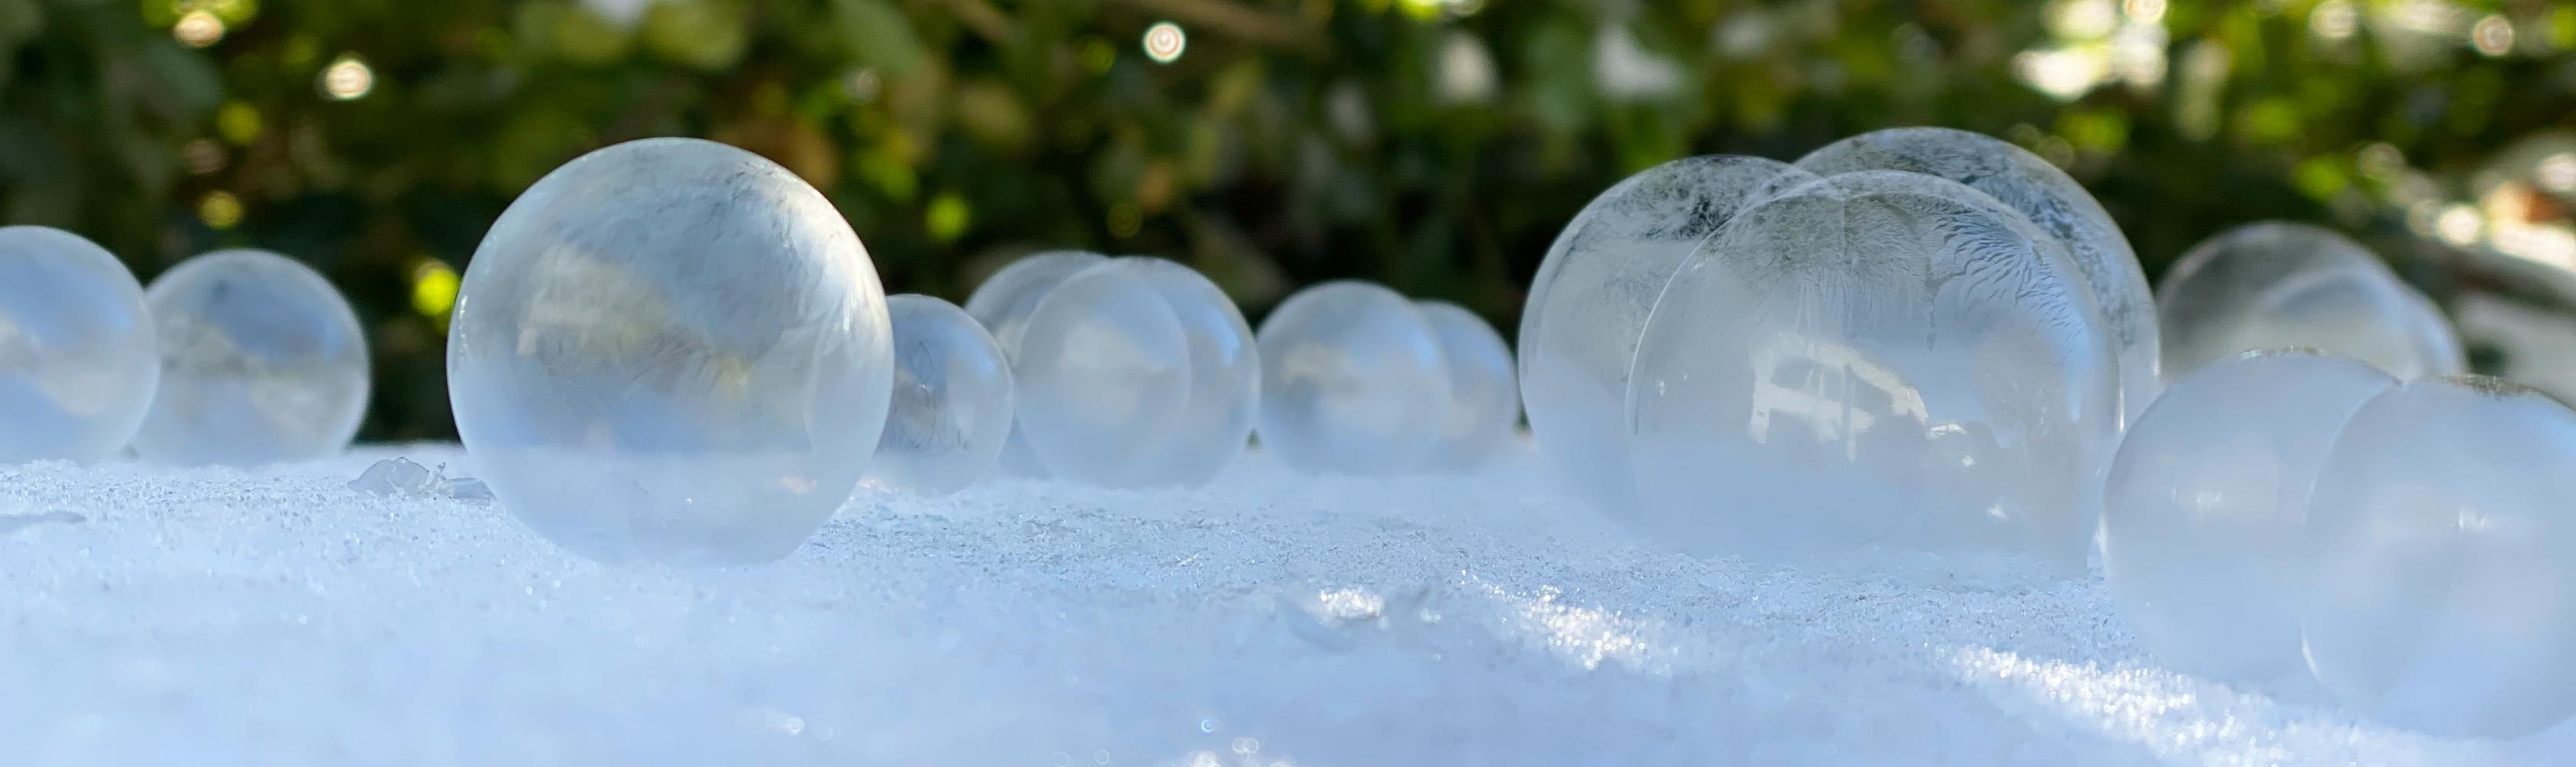 Des bulles de savon gelées en hiver 